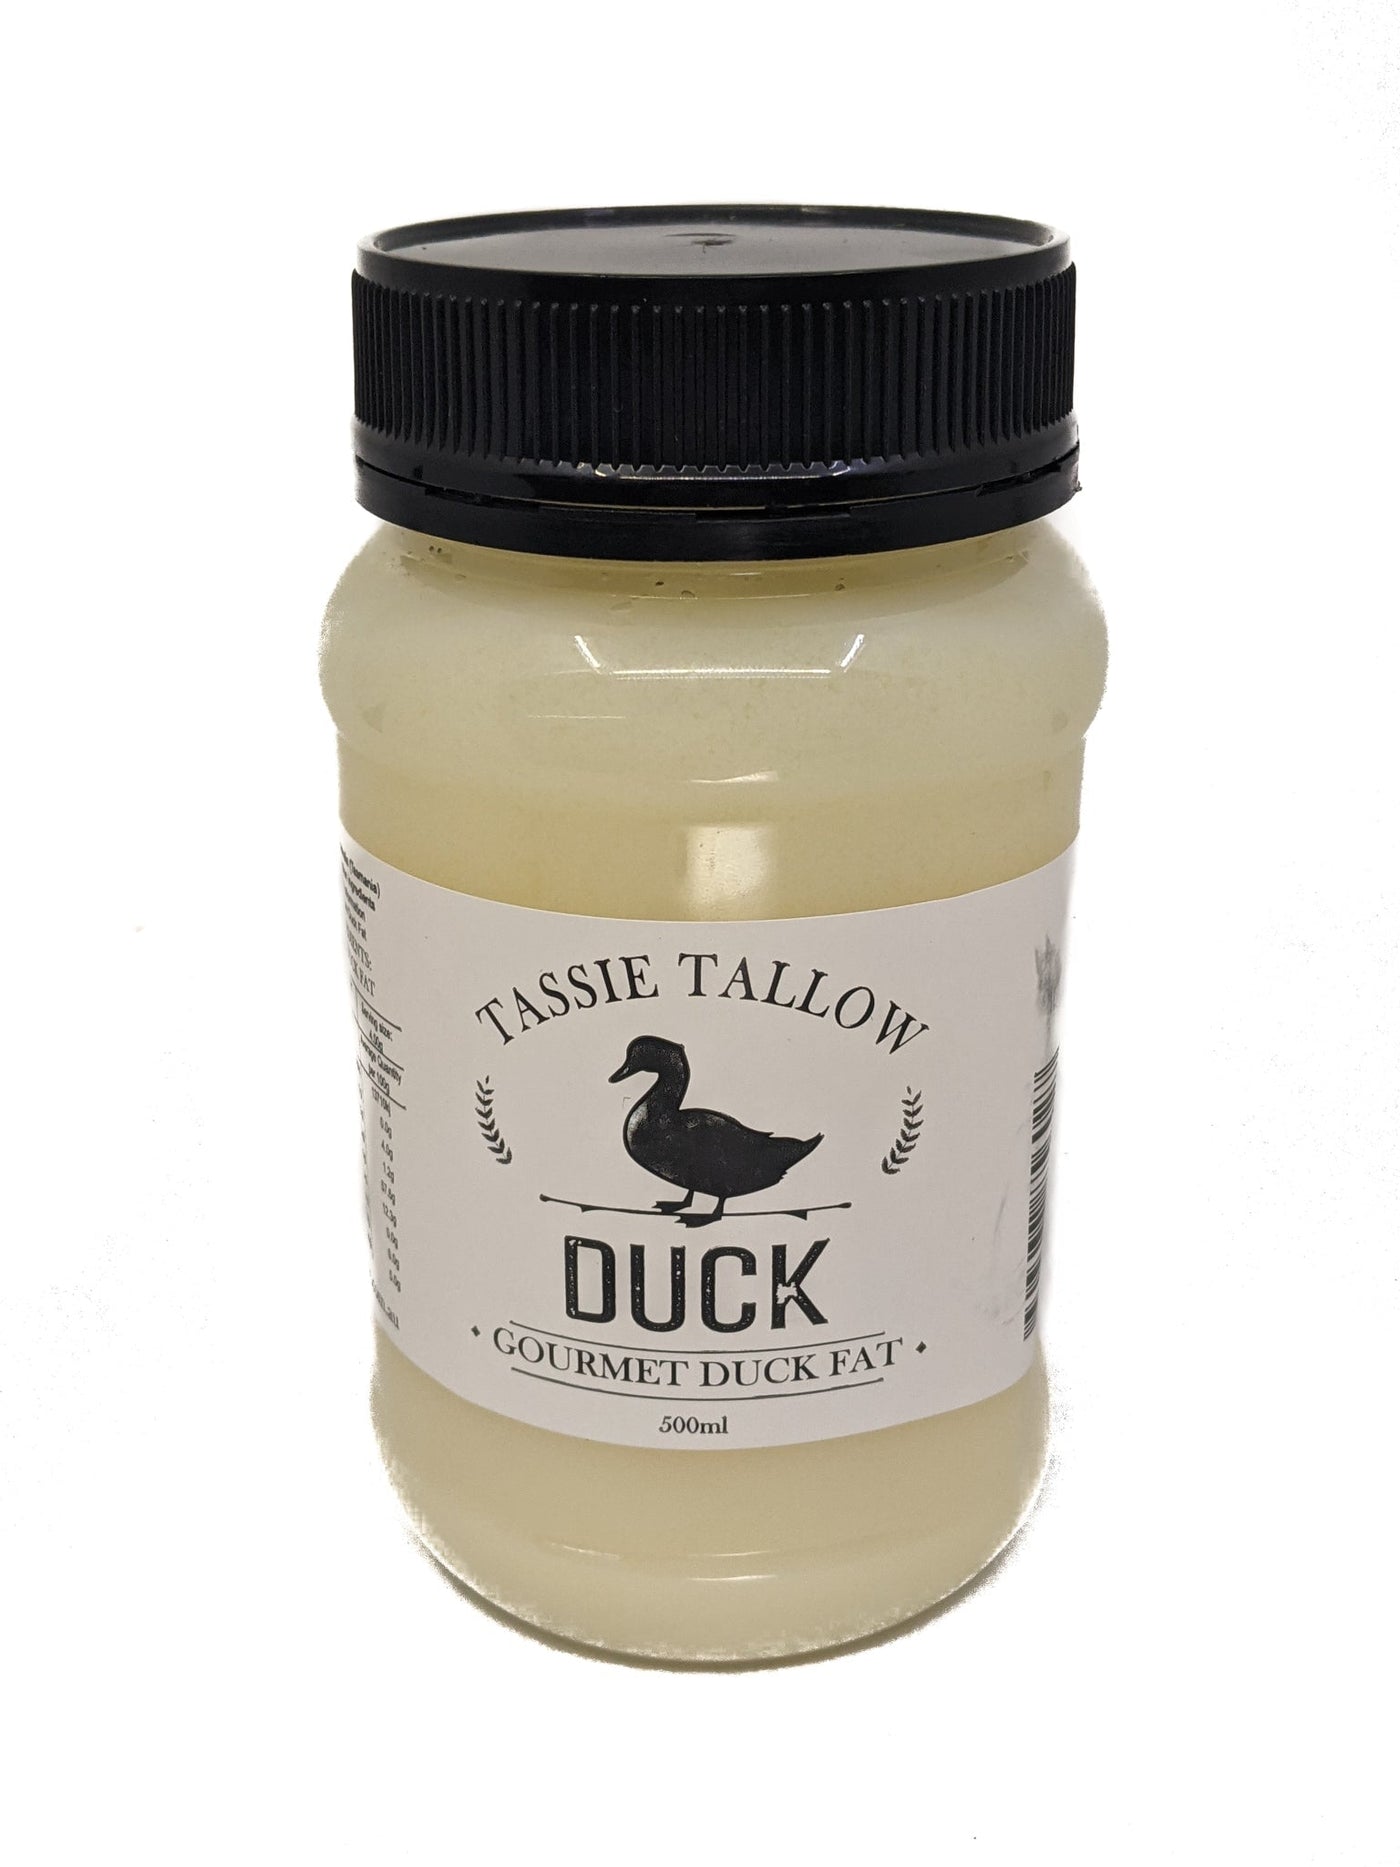 Tassie Tallow Duck Fat 500ML